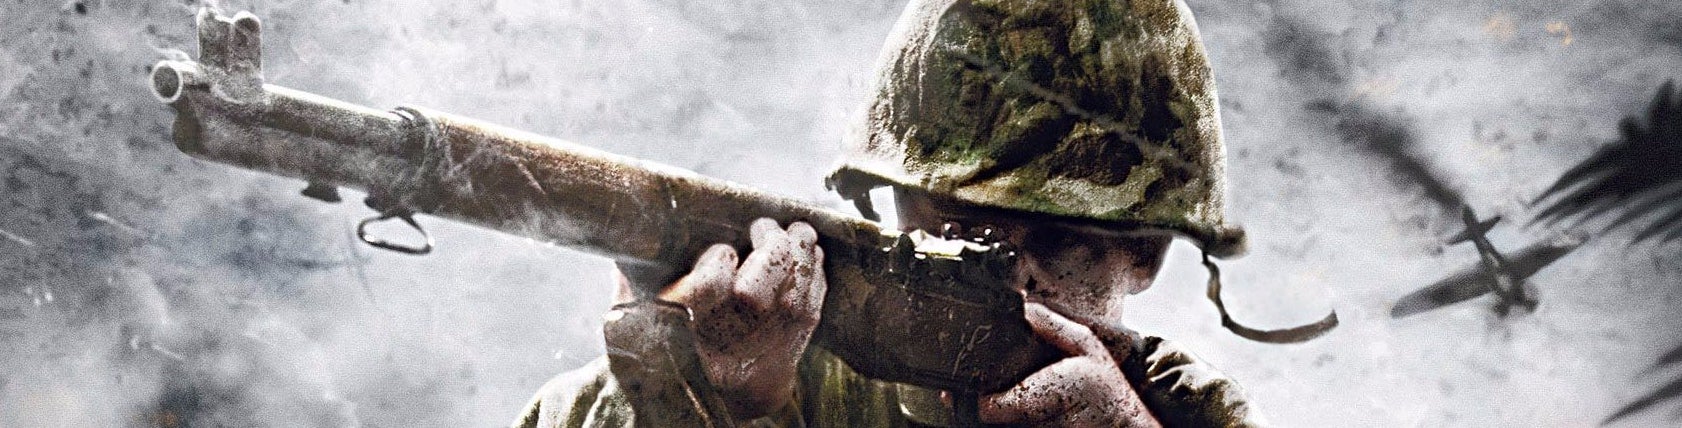 Obrazki dla Jak Call of Duty: WW2 wygląda na PS4 Pro i Xbox One X?